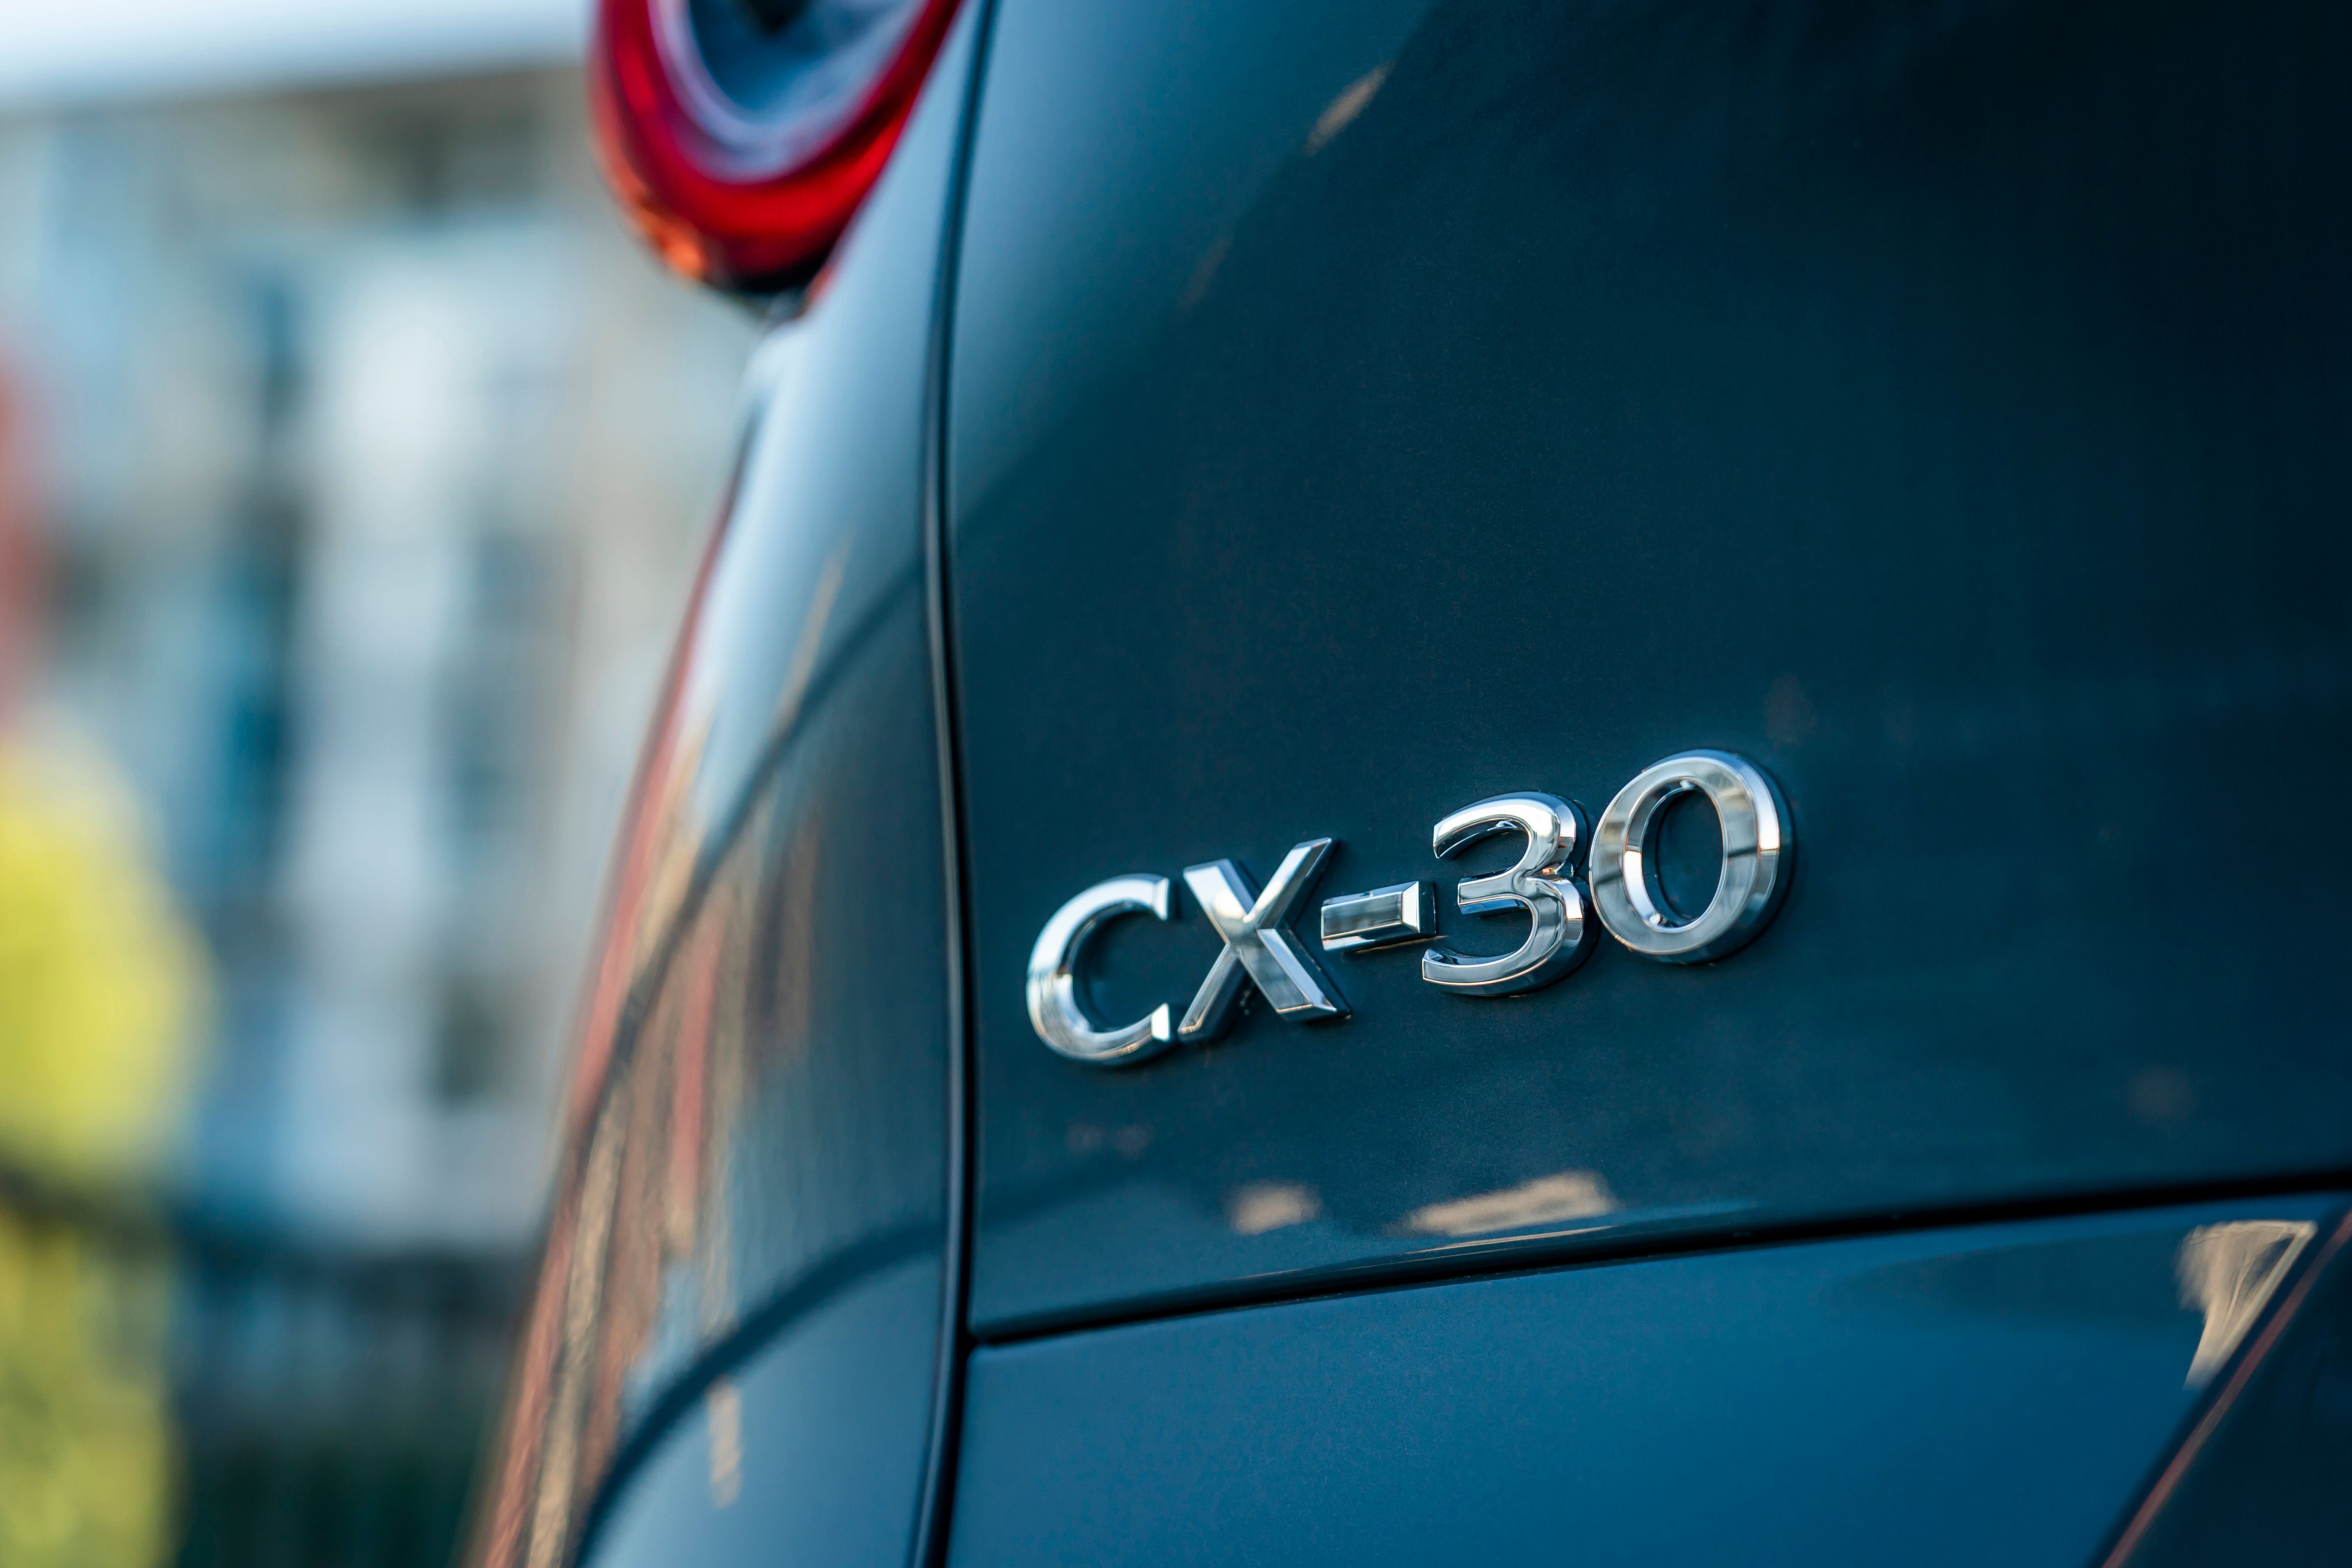 2021 Mazda CX-30